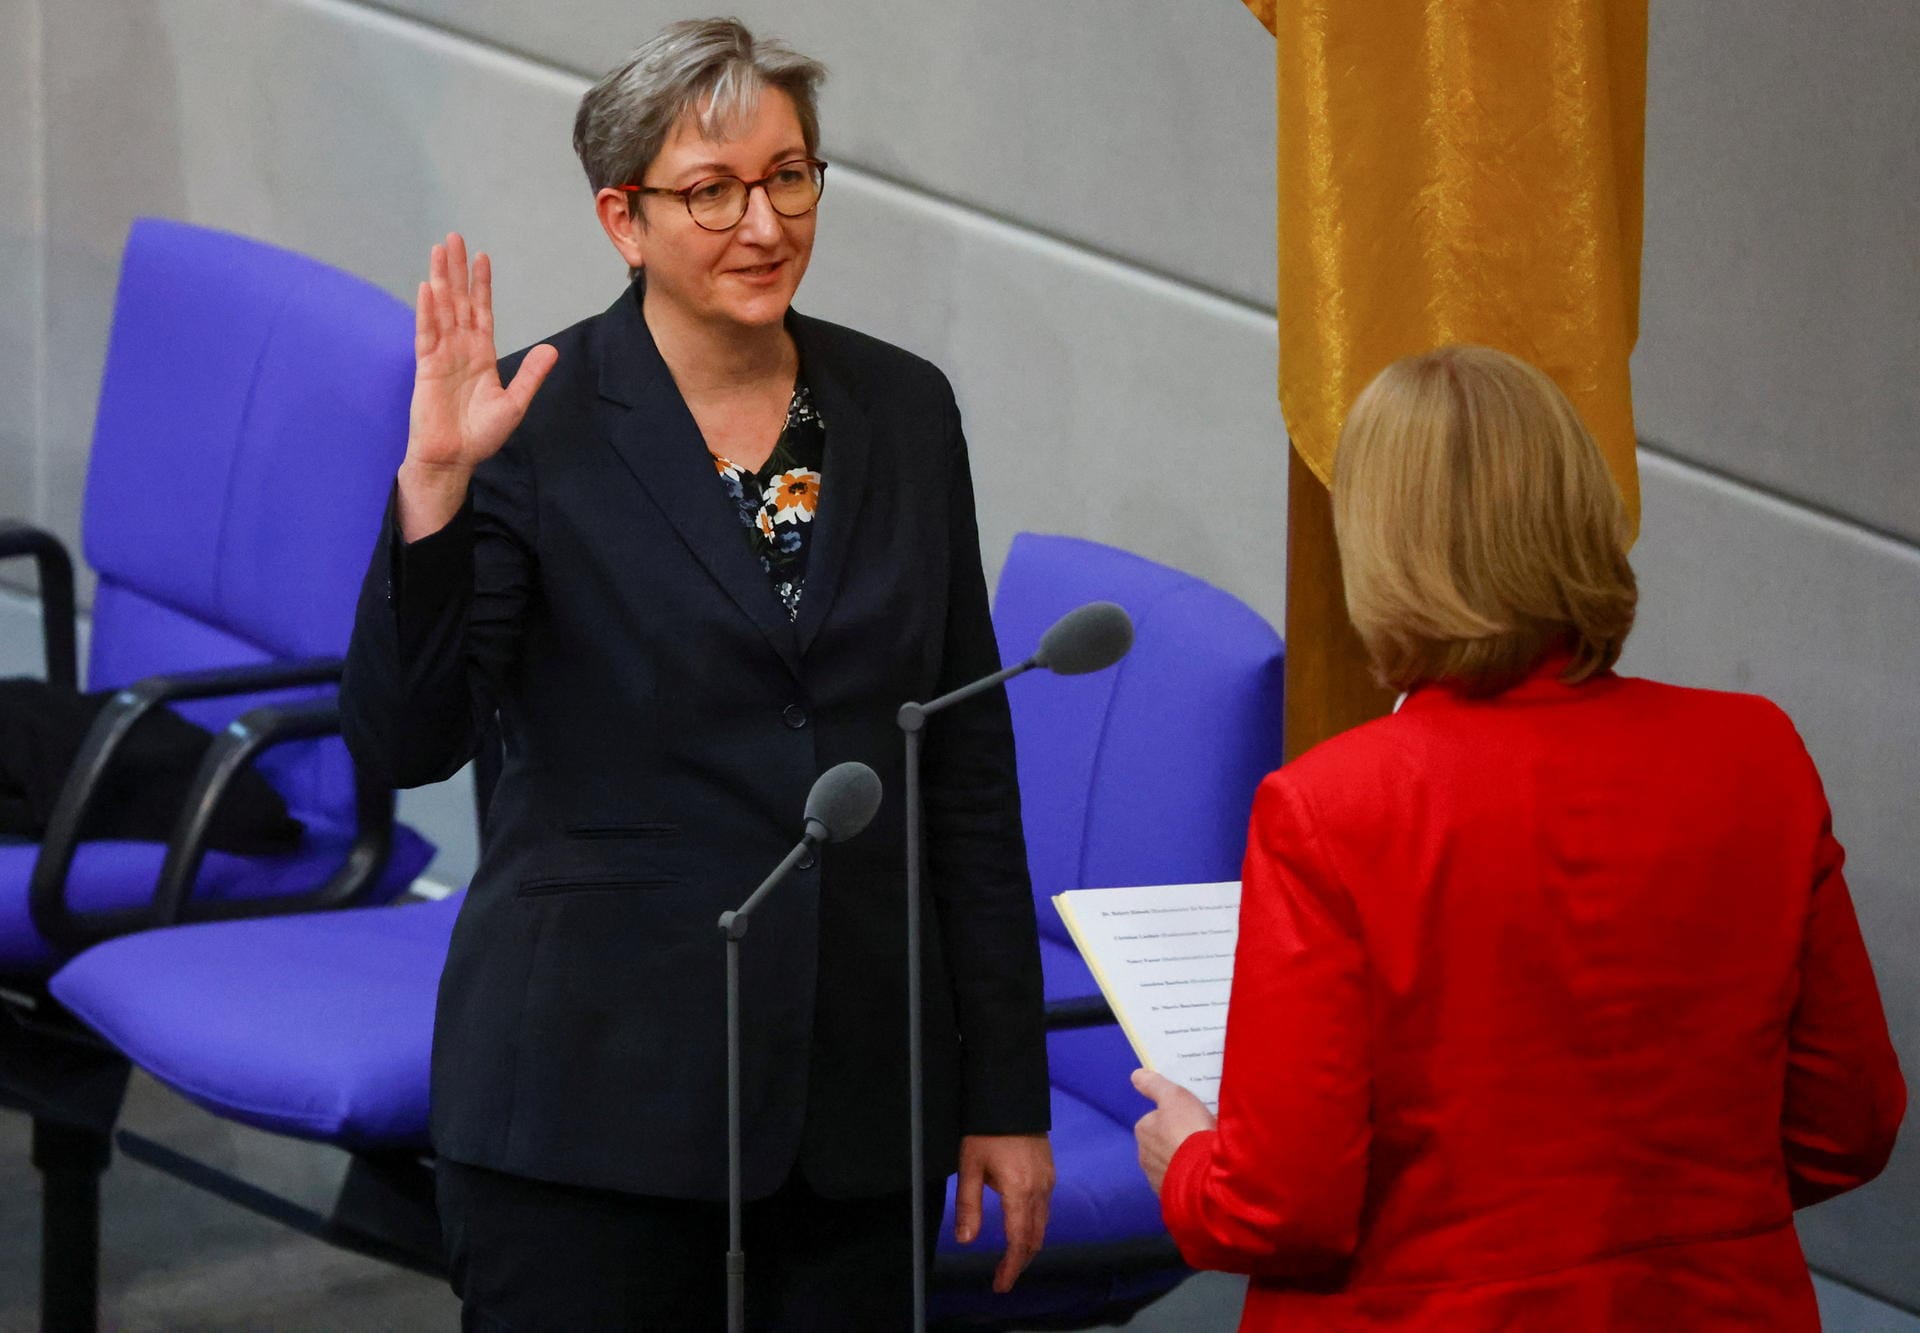 Das neue Bauministerium wird die Brandenburger SPD-Politikerin Klara Geywitz leiten. Die 45-Jährige ist Parteivize und war unter anderem Generalsekretärin von Brandenburgs SPD-Chef Dietmar Woidke.